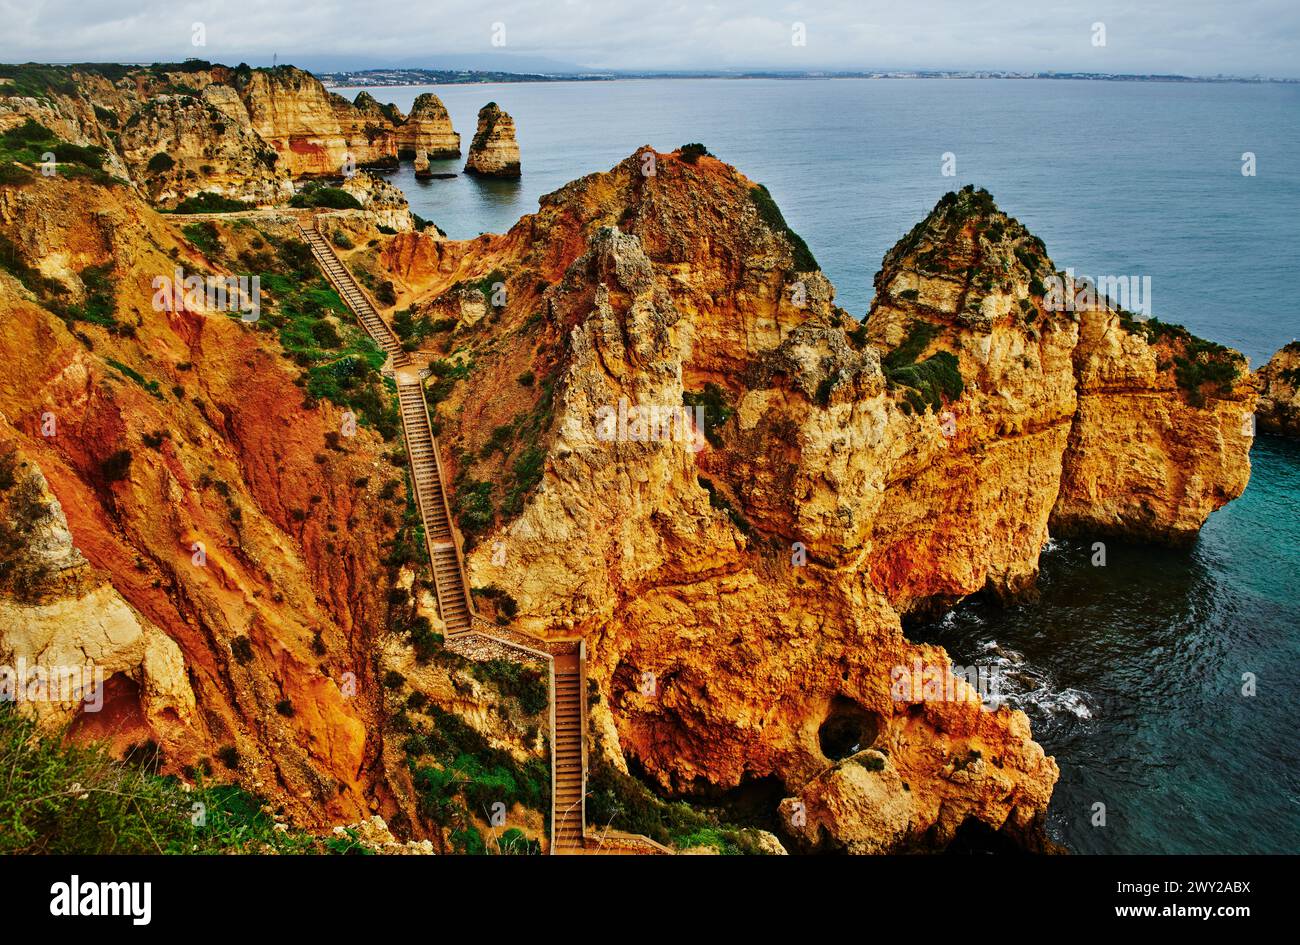 View from the Lagos coastal walk, Ponta da Piedade trail, Portugal, Europe Stock Photo